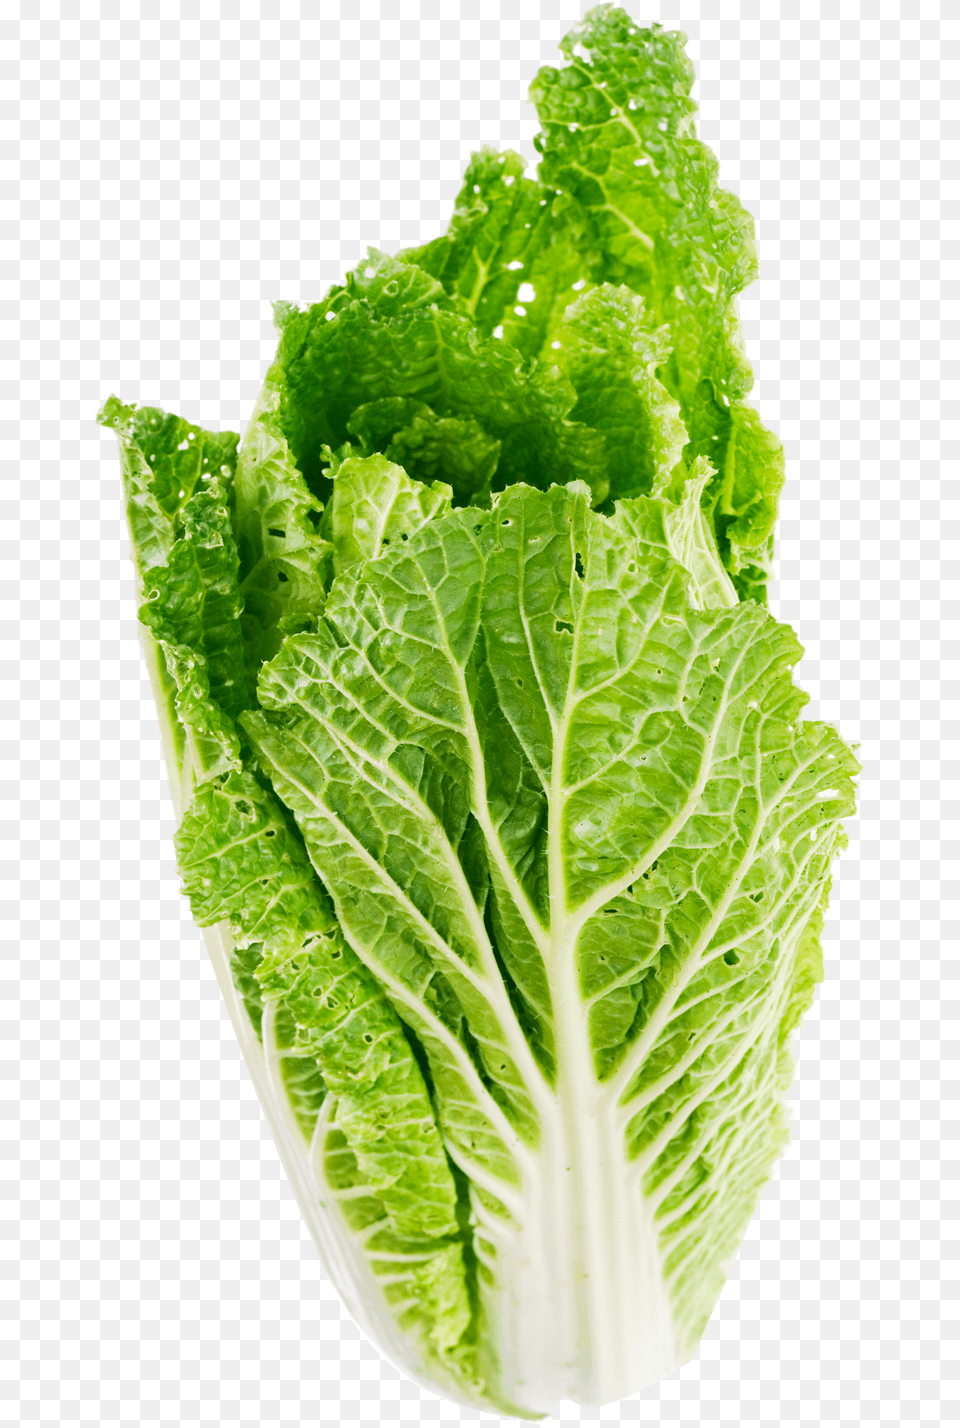 Lettuce Leaf Image For Lettuce, Food, Plant, Produce, Vegetable Free Png Download